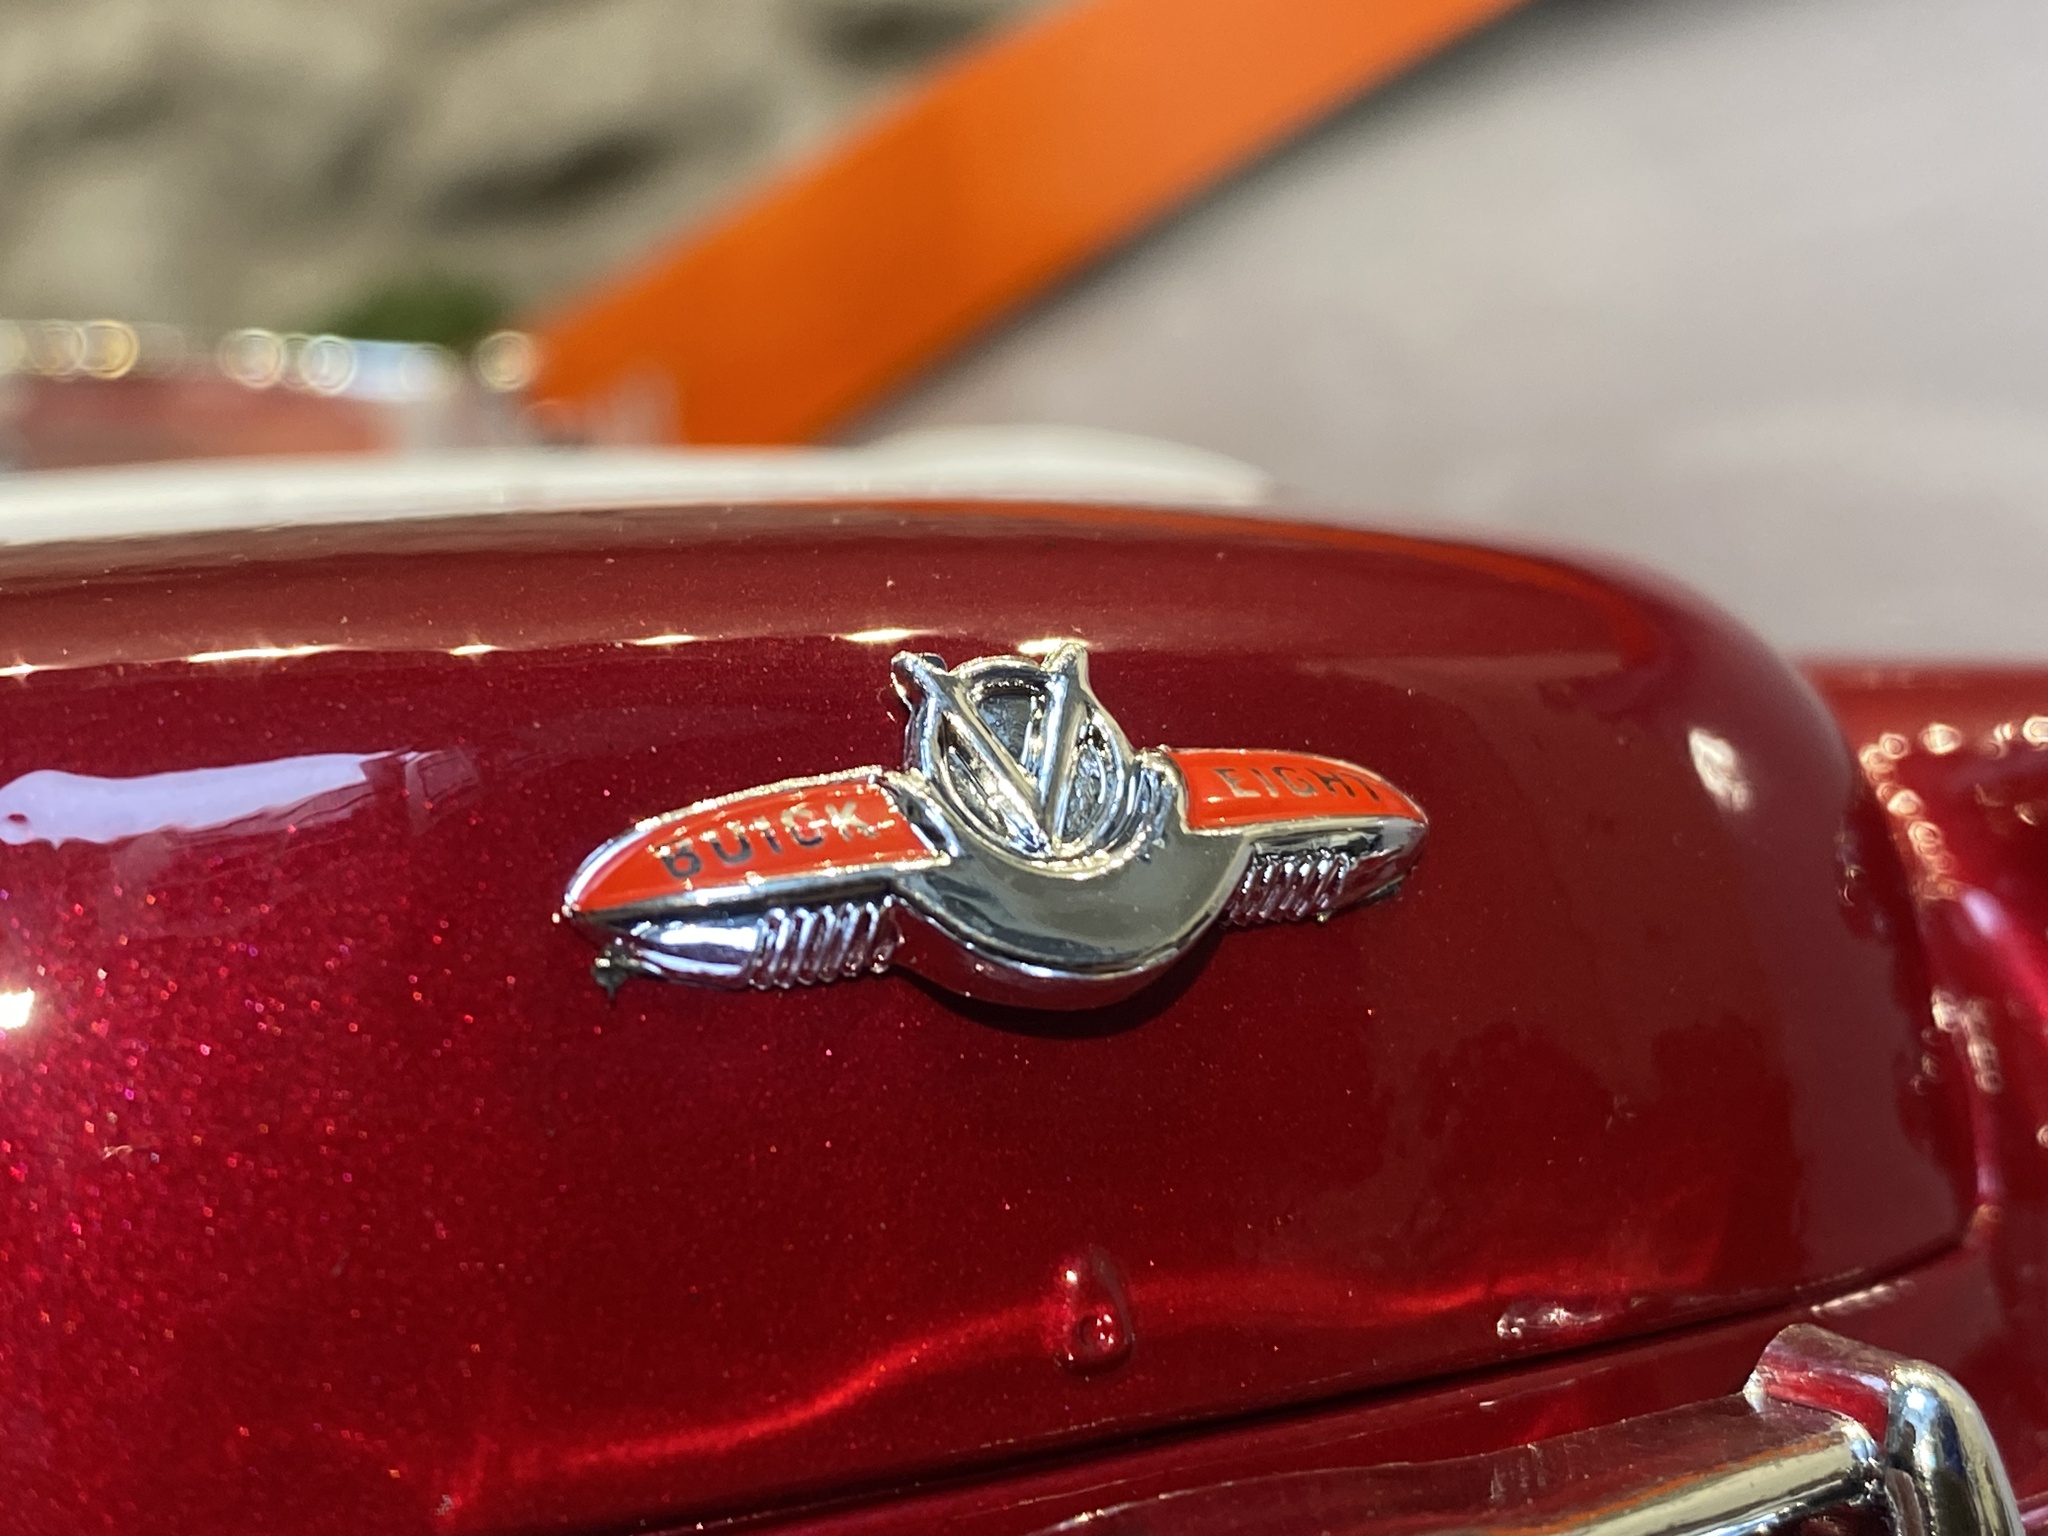 Skala 1/18 Buick Skylark 1953' Red/white fr Timeless Legends - MotorMax